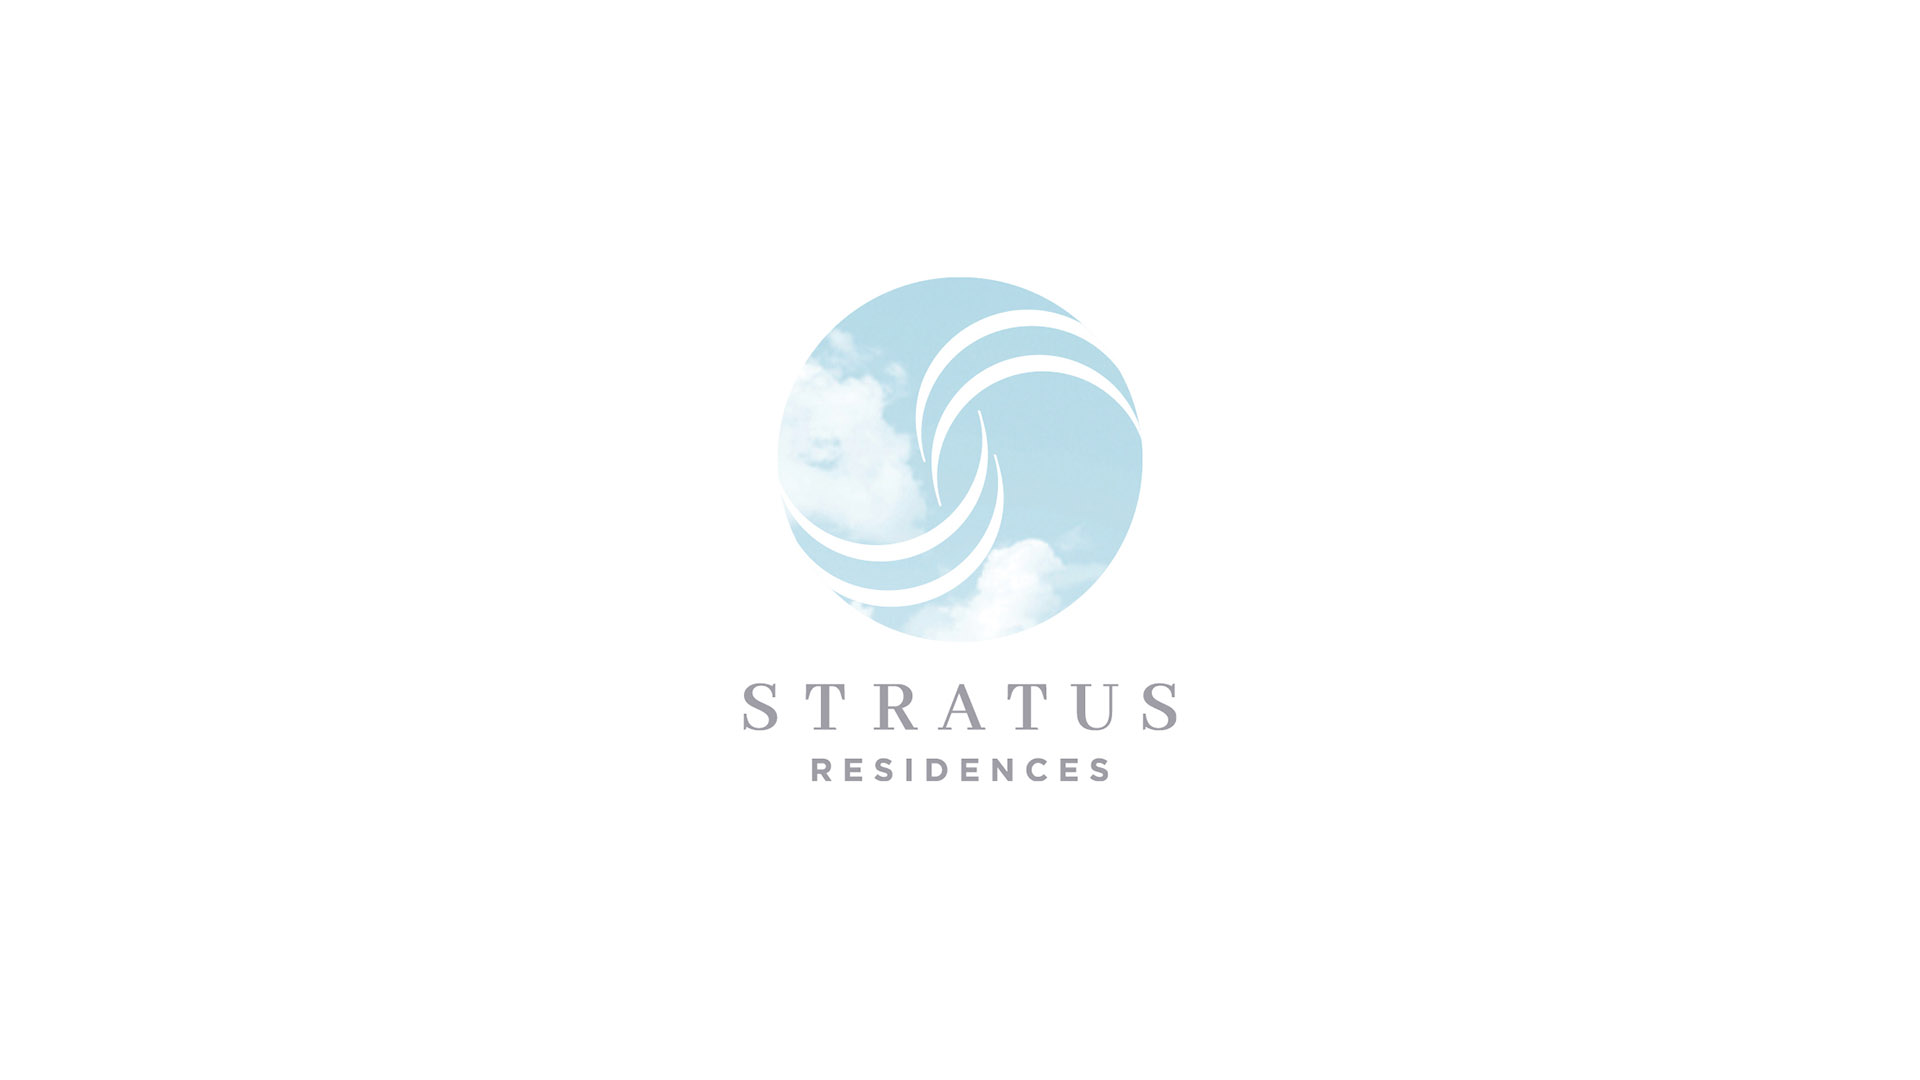 stratus residences cloud logo on white